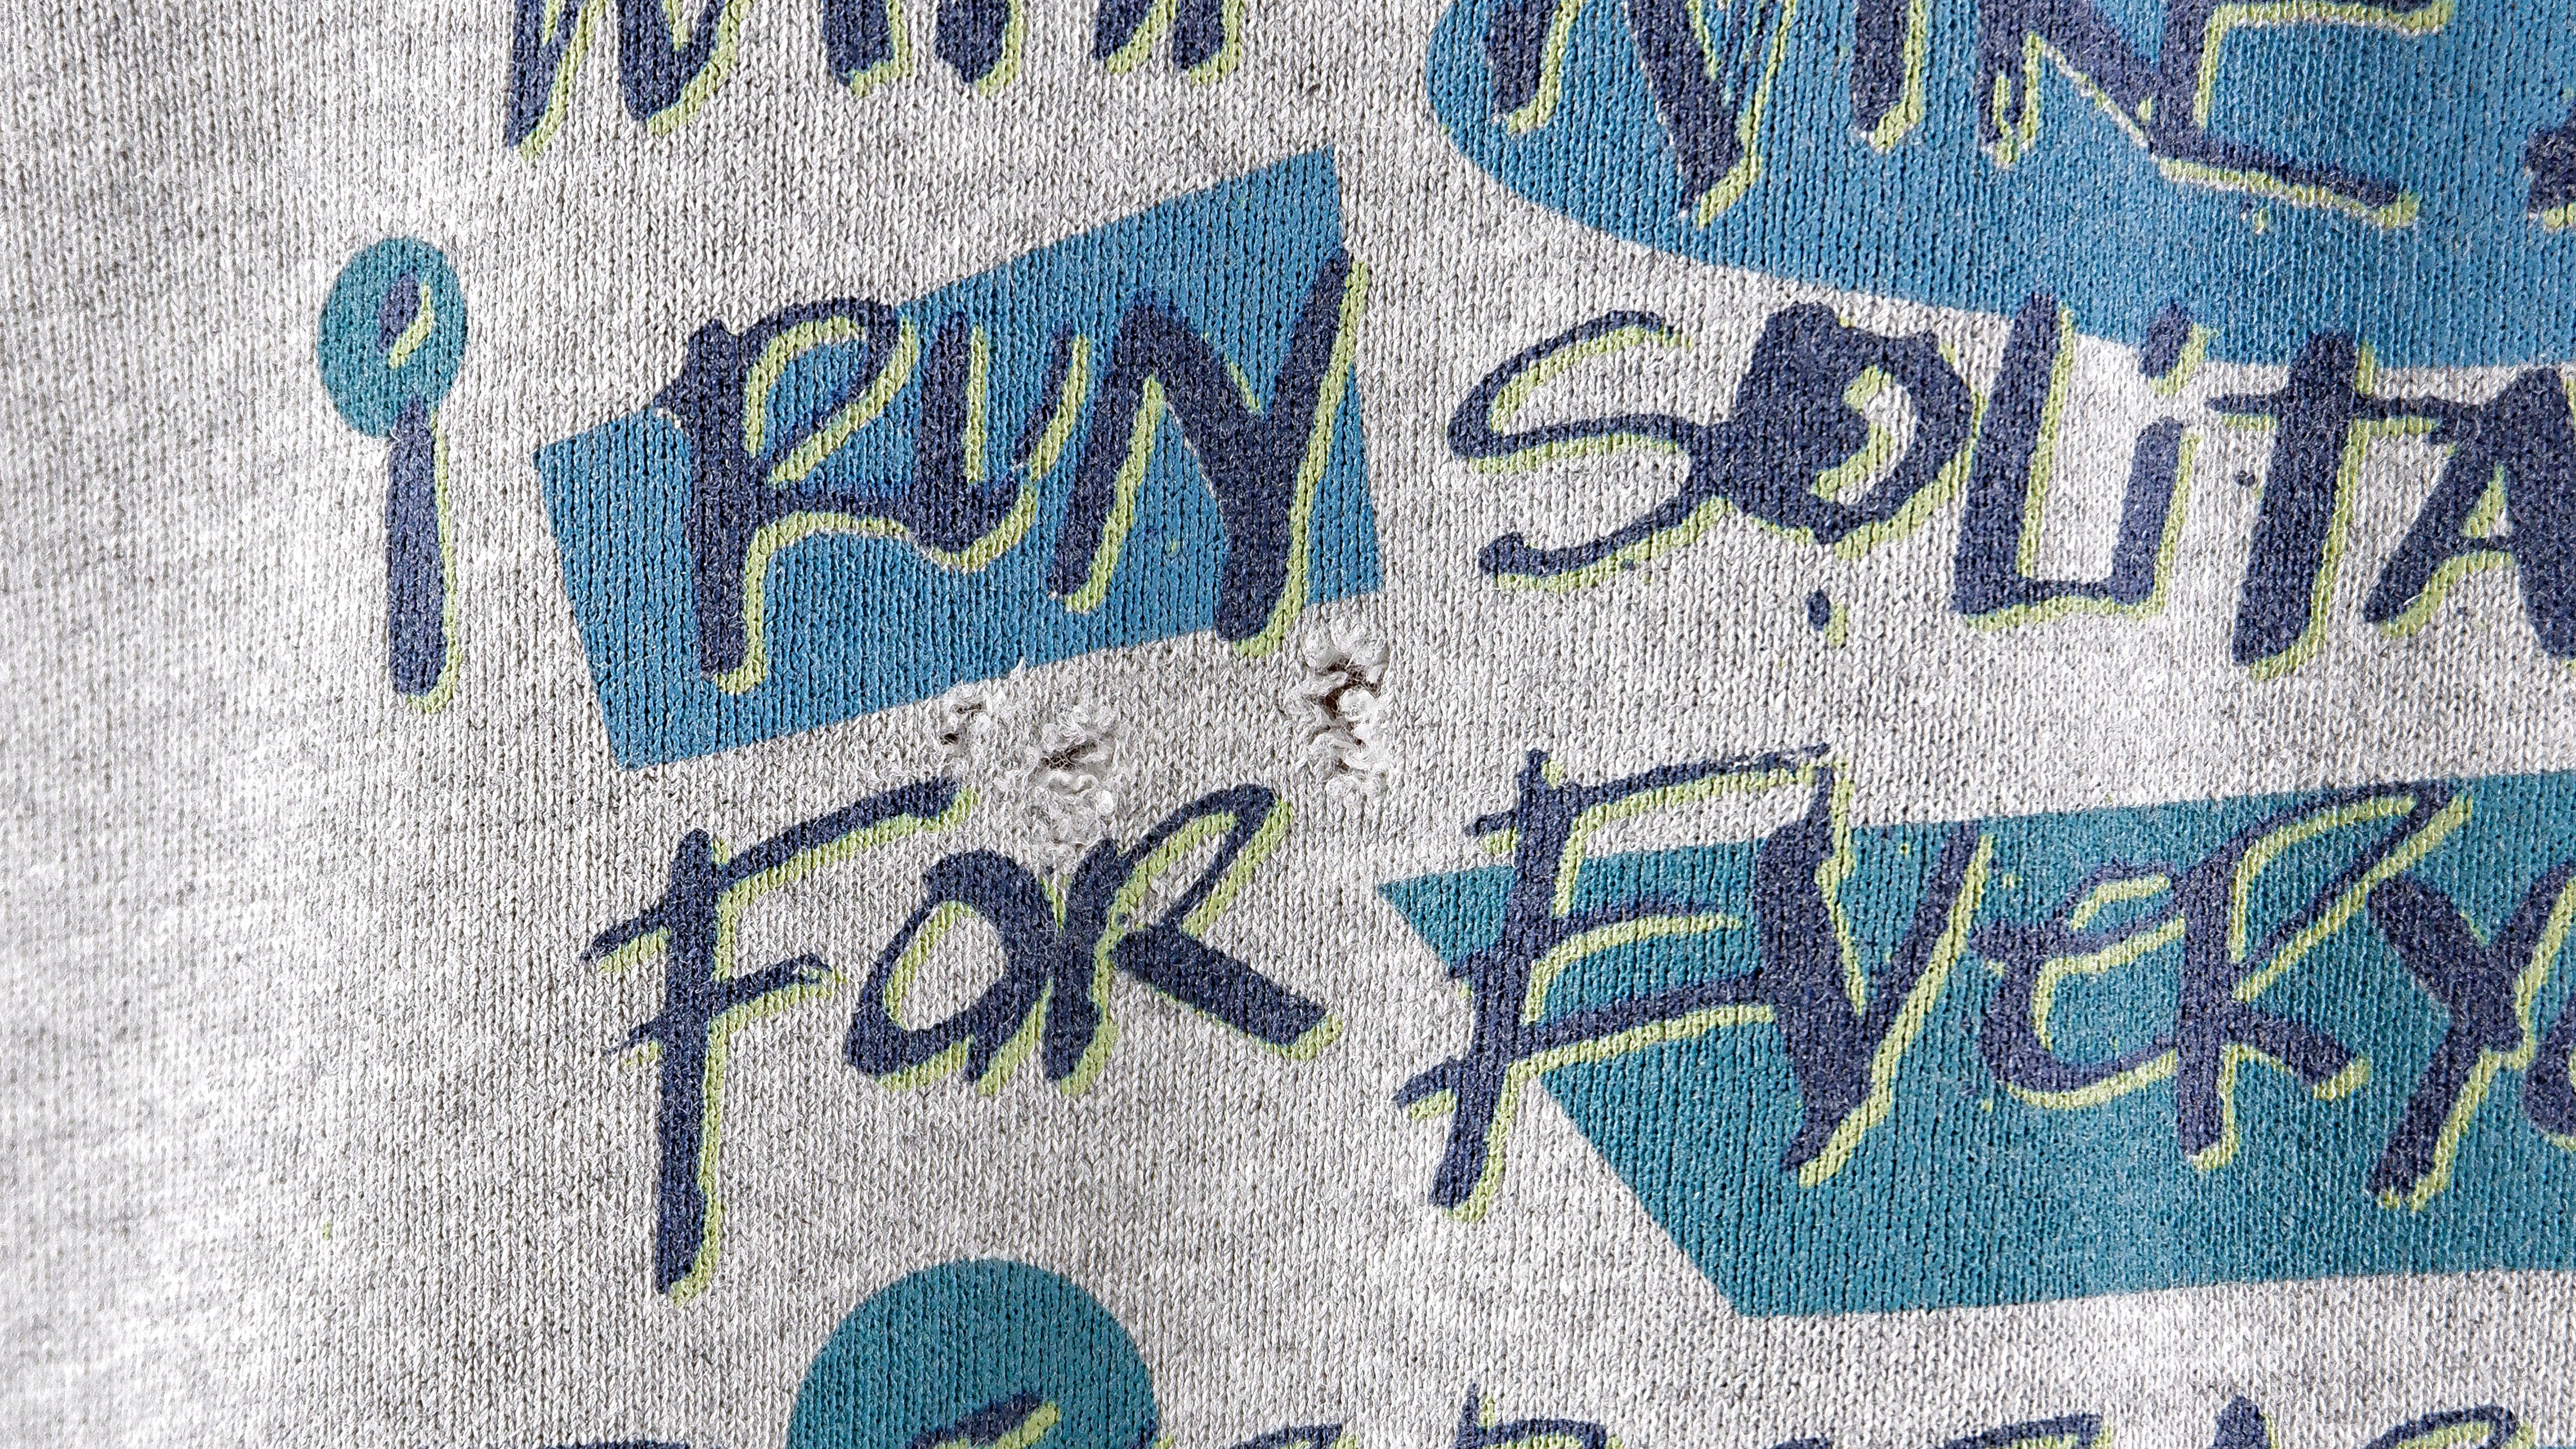 Vintage Nike - St. Louis Blues 1/4 Zip Spell-Out Sweatshirt 1990s Medium